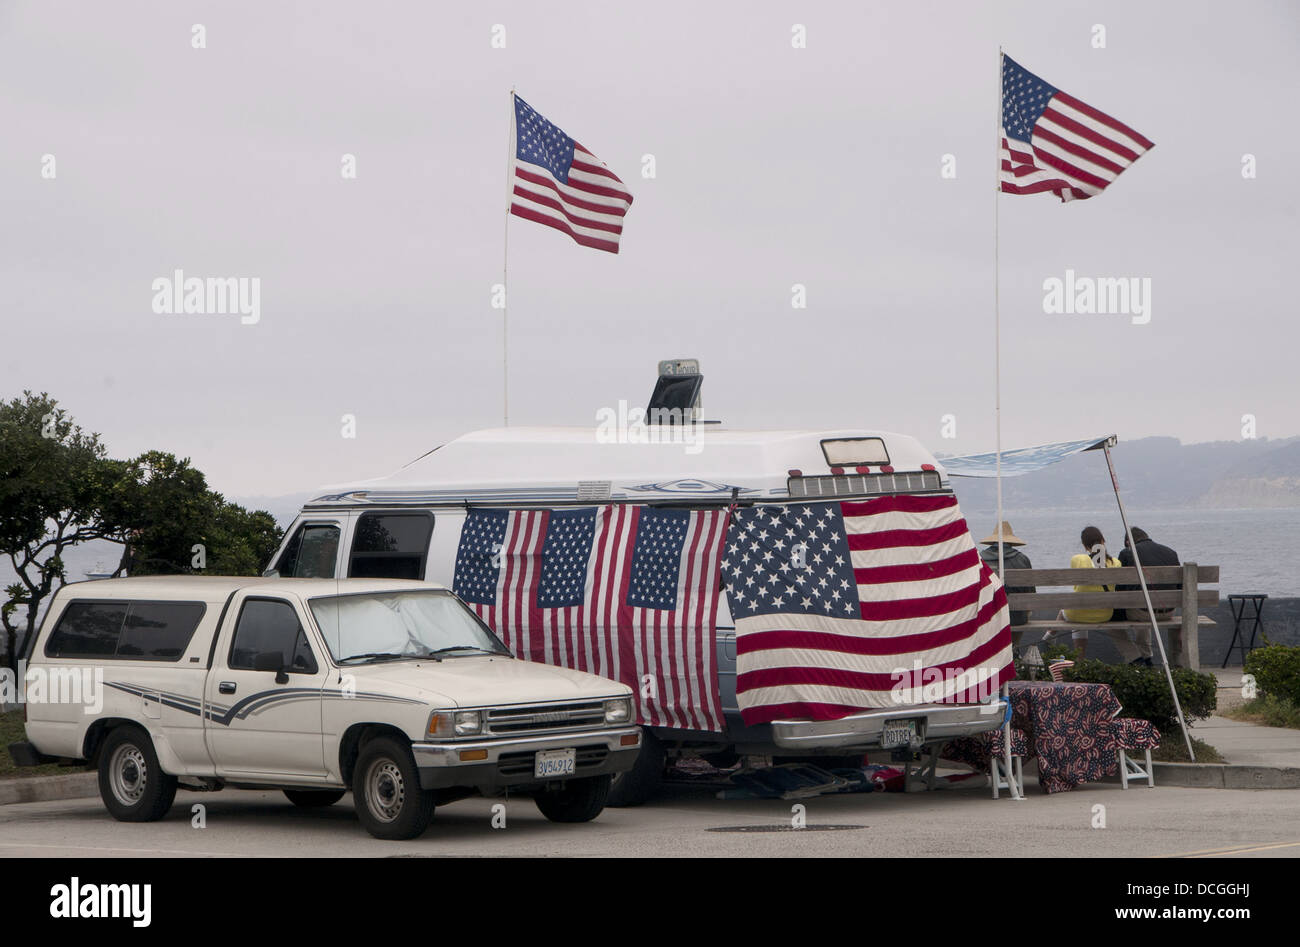 Van y la bandera americana, la bandera americana, playa de La Jolla, California, el 4 de julio, el Frente Patriótico, el patriotismo estadounidense Foto de stock